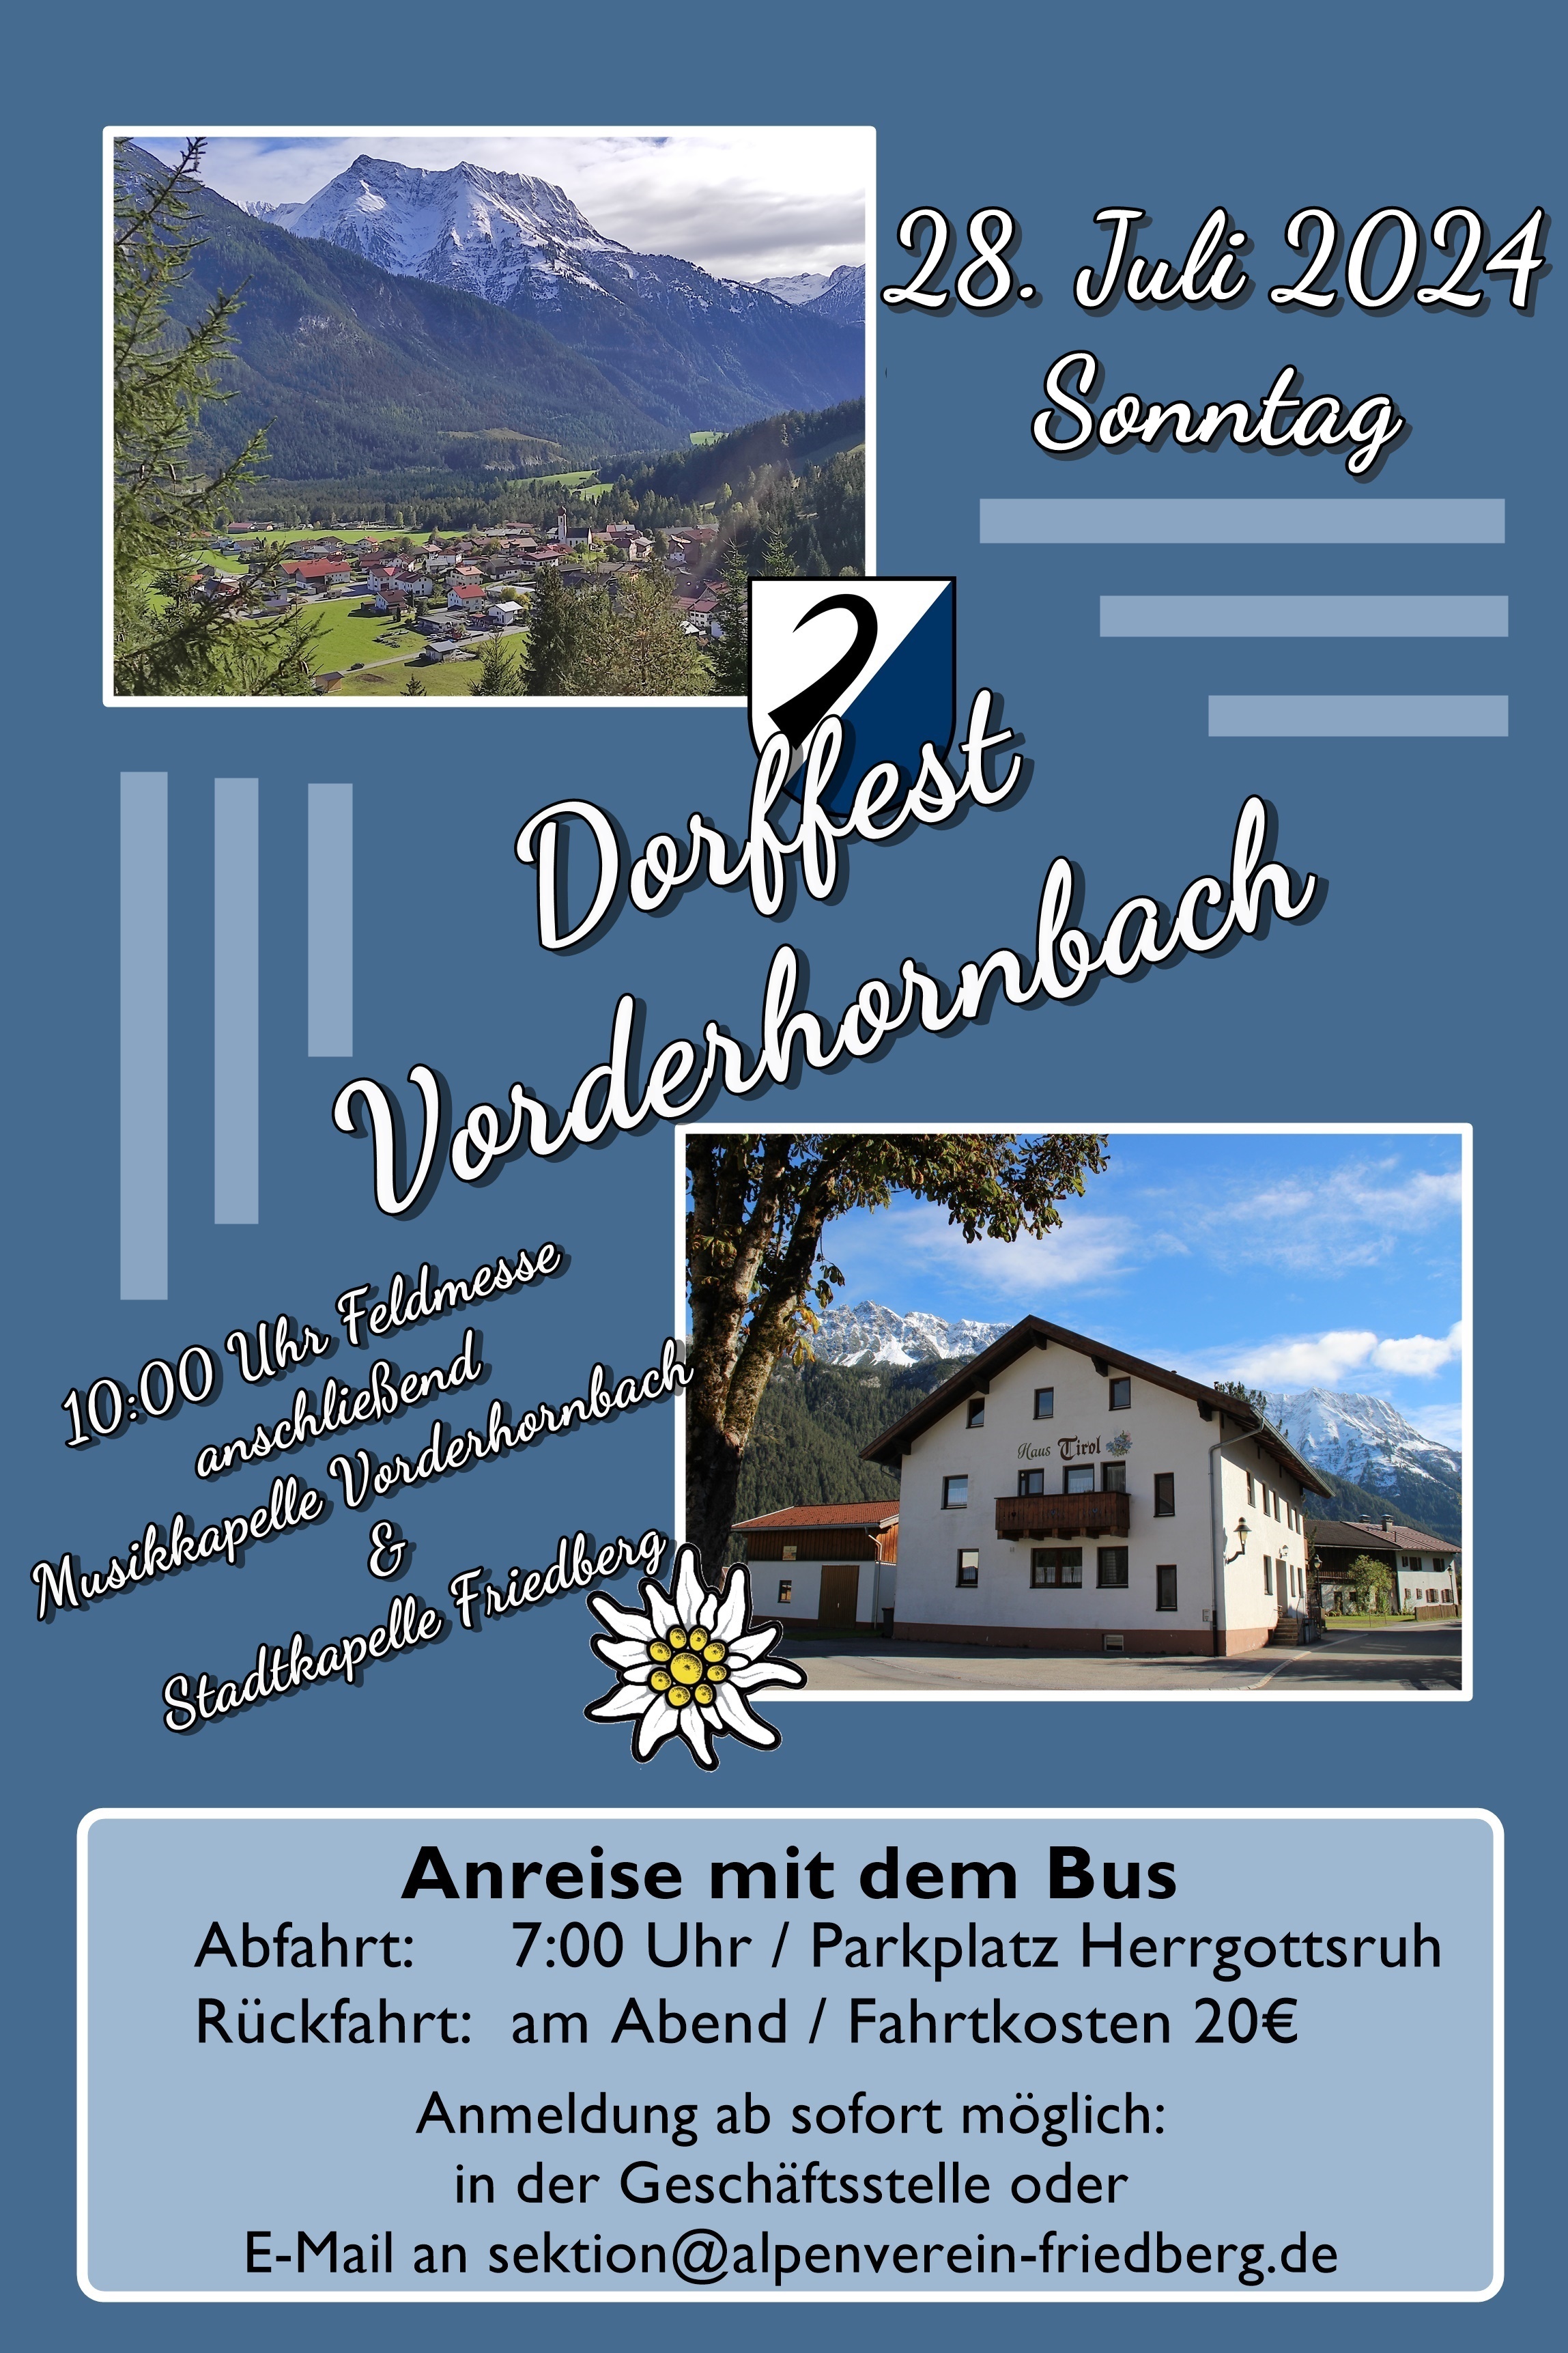 Dorffest Vorderhornbach